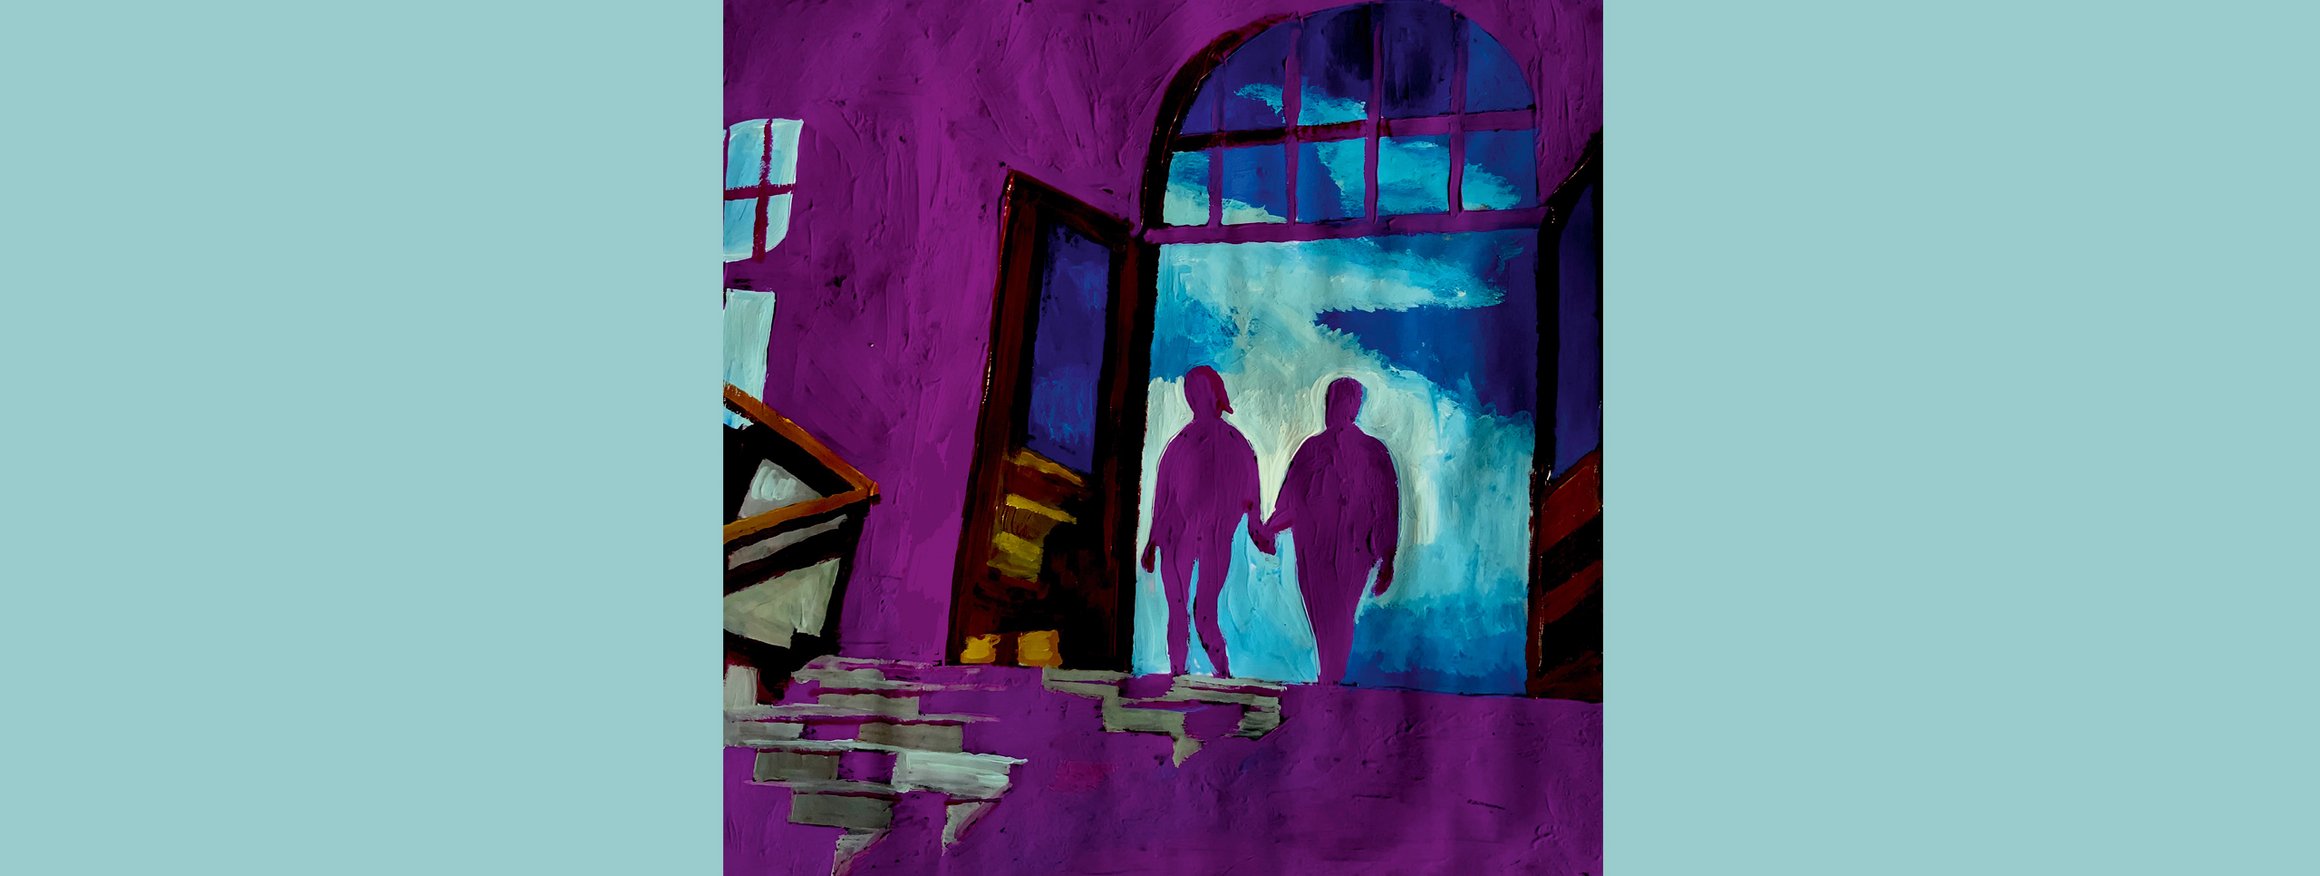 Die Illustration zeigt einen Mann und eine Frau, die Hand in Hand durch einen Eingang in ein Gebäude gehen